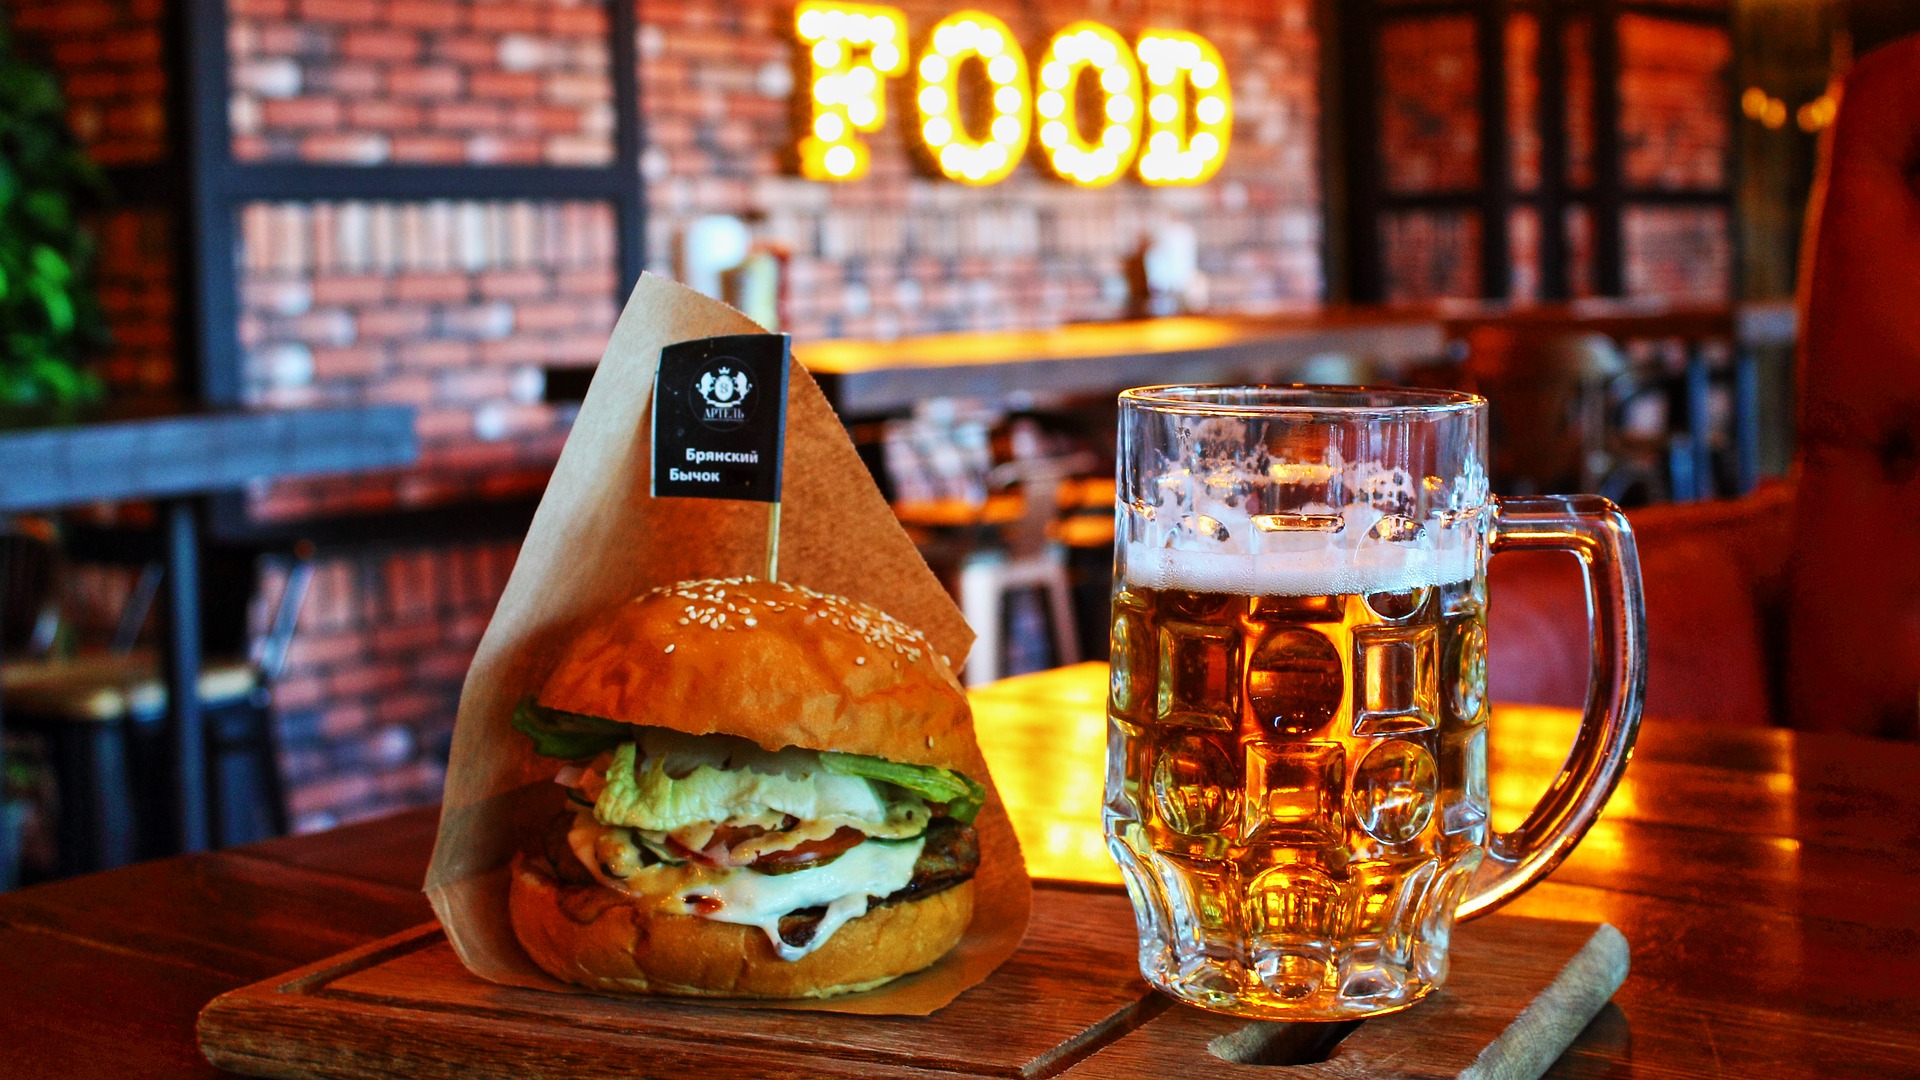 Mesa de bar com hamburguer e caneca de cerveja